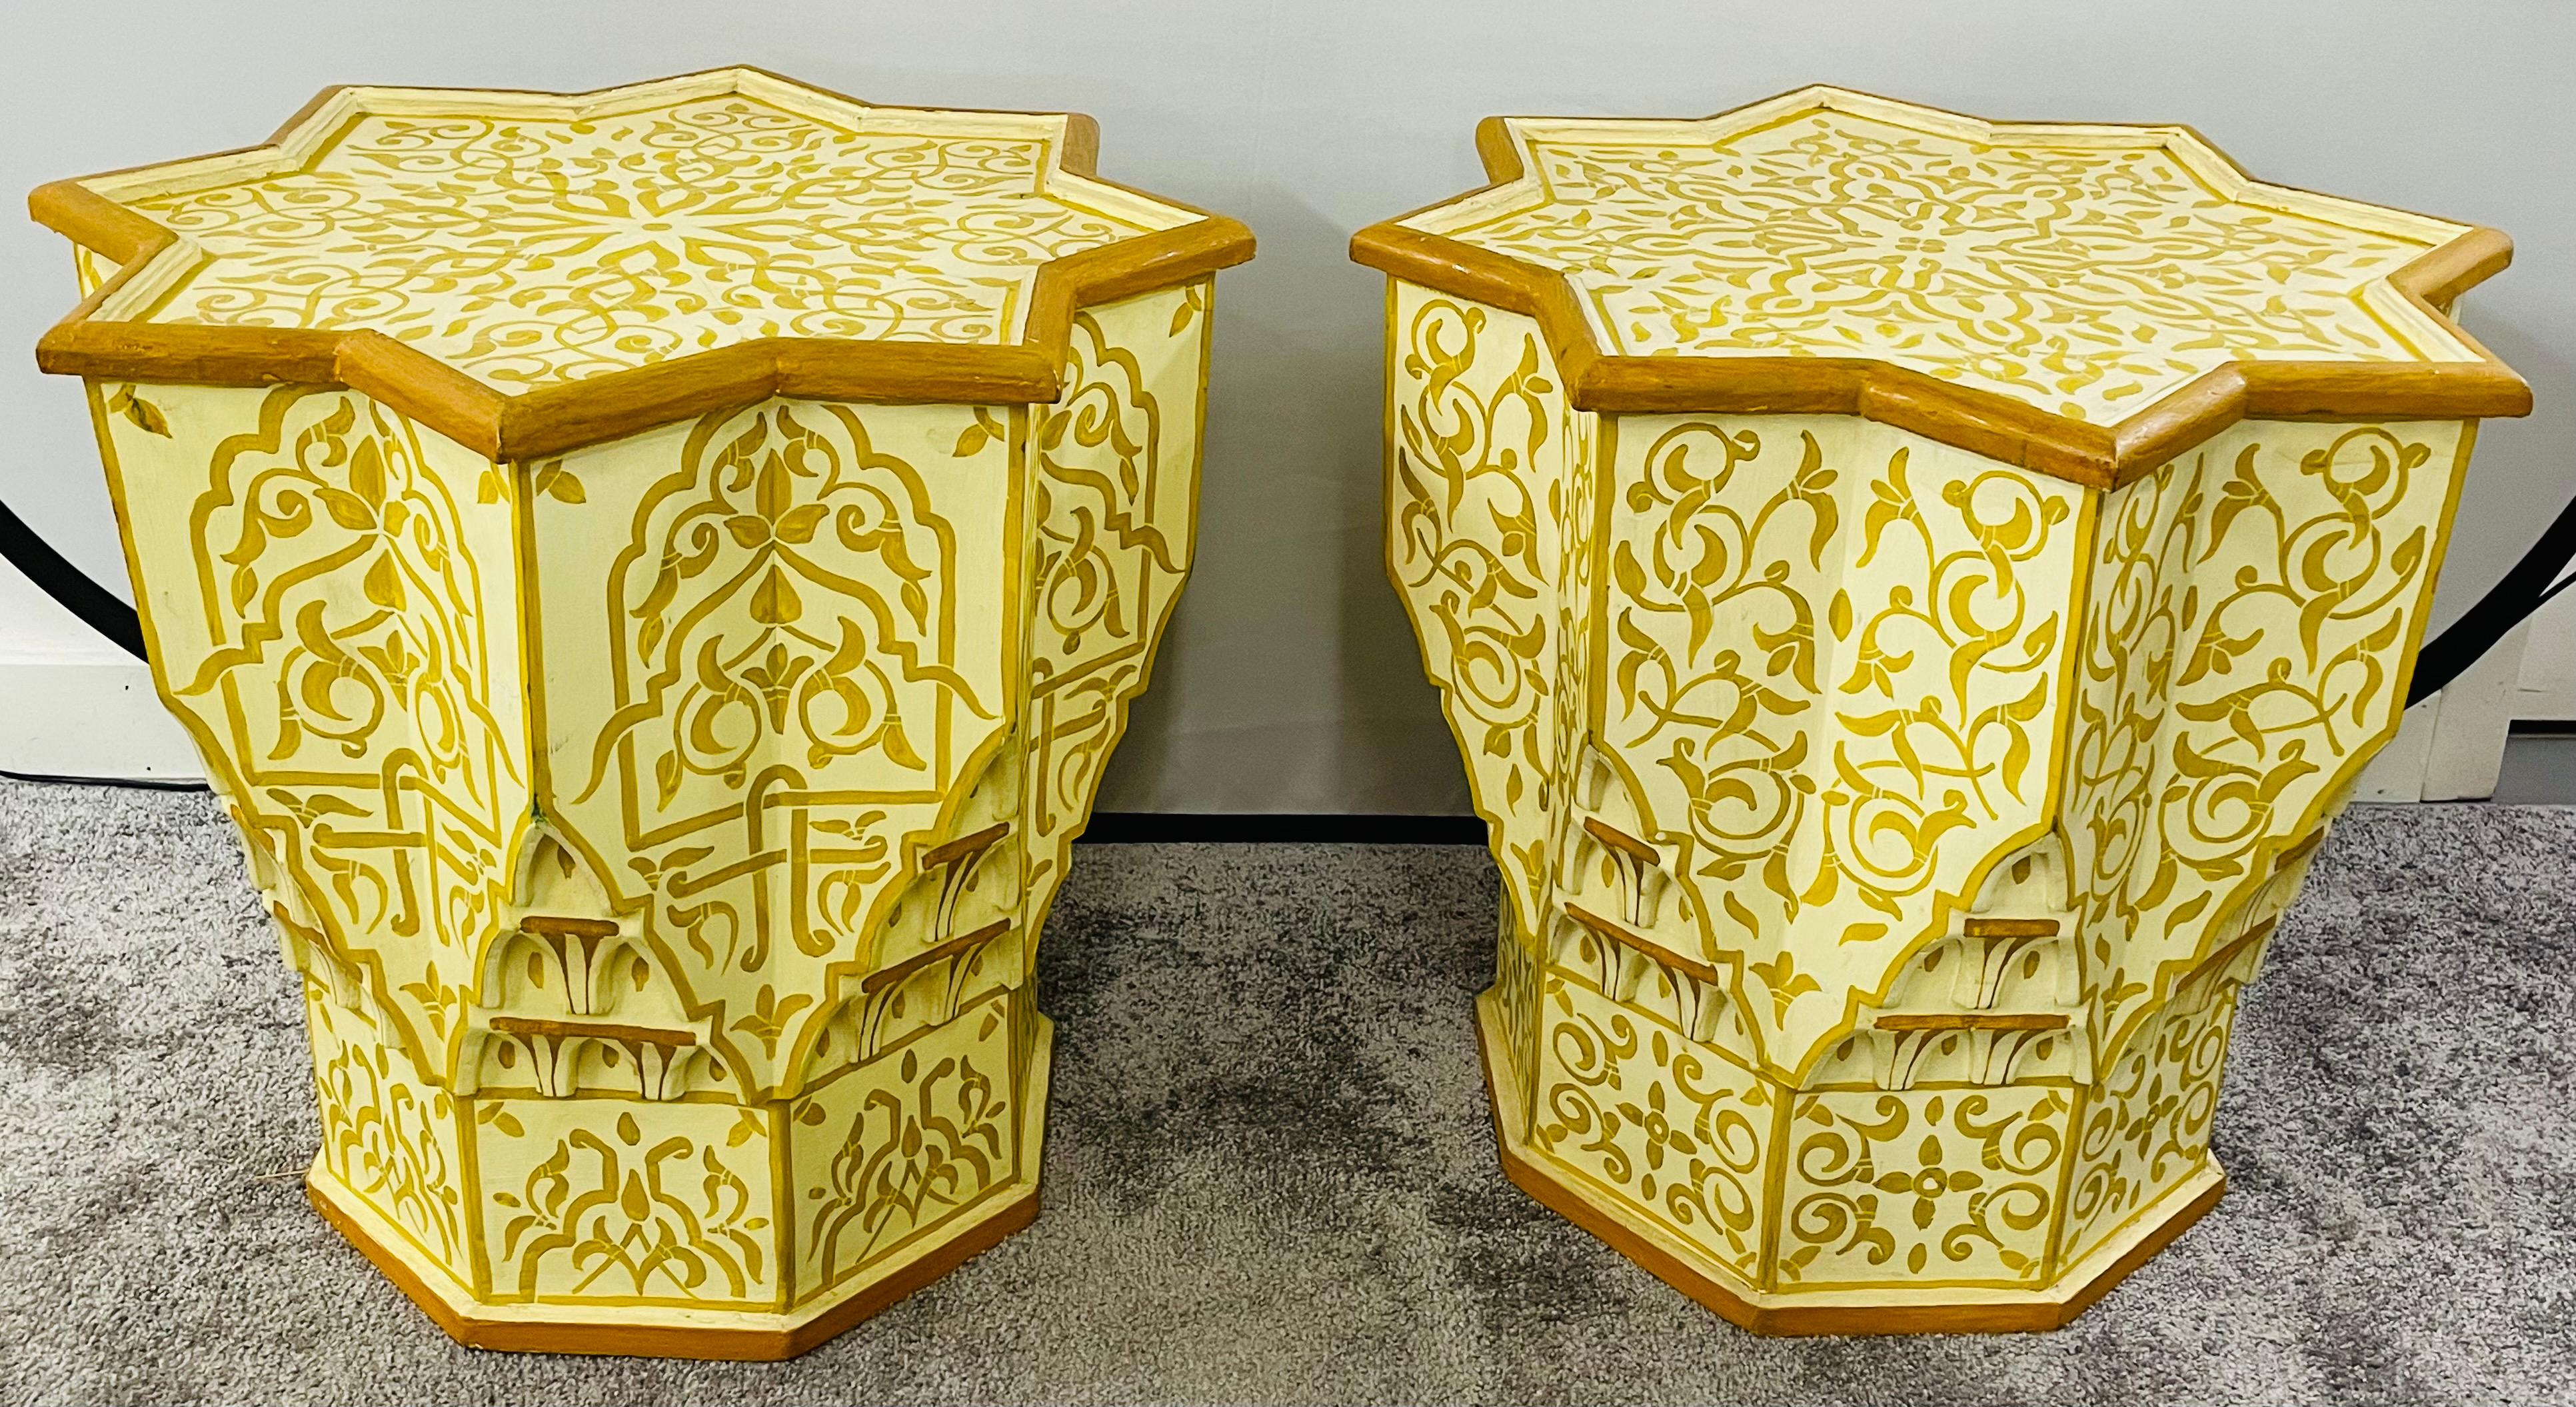 Une paire exquise de tables d'appoint marocaines vintage peintes à la main avec de beaux motifs arabesques mauresques décorant le dessus et les côtés de la table. Le plateau de la table est en forme d'étoile et les côtés sont sculptés à la main,